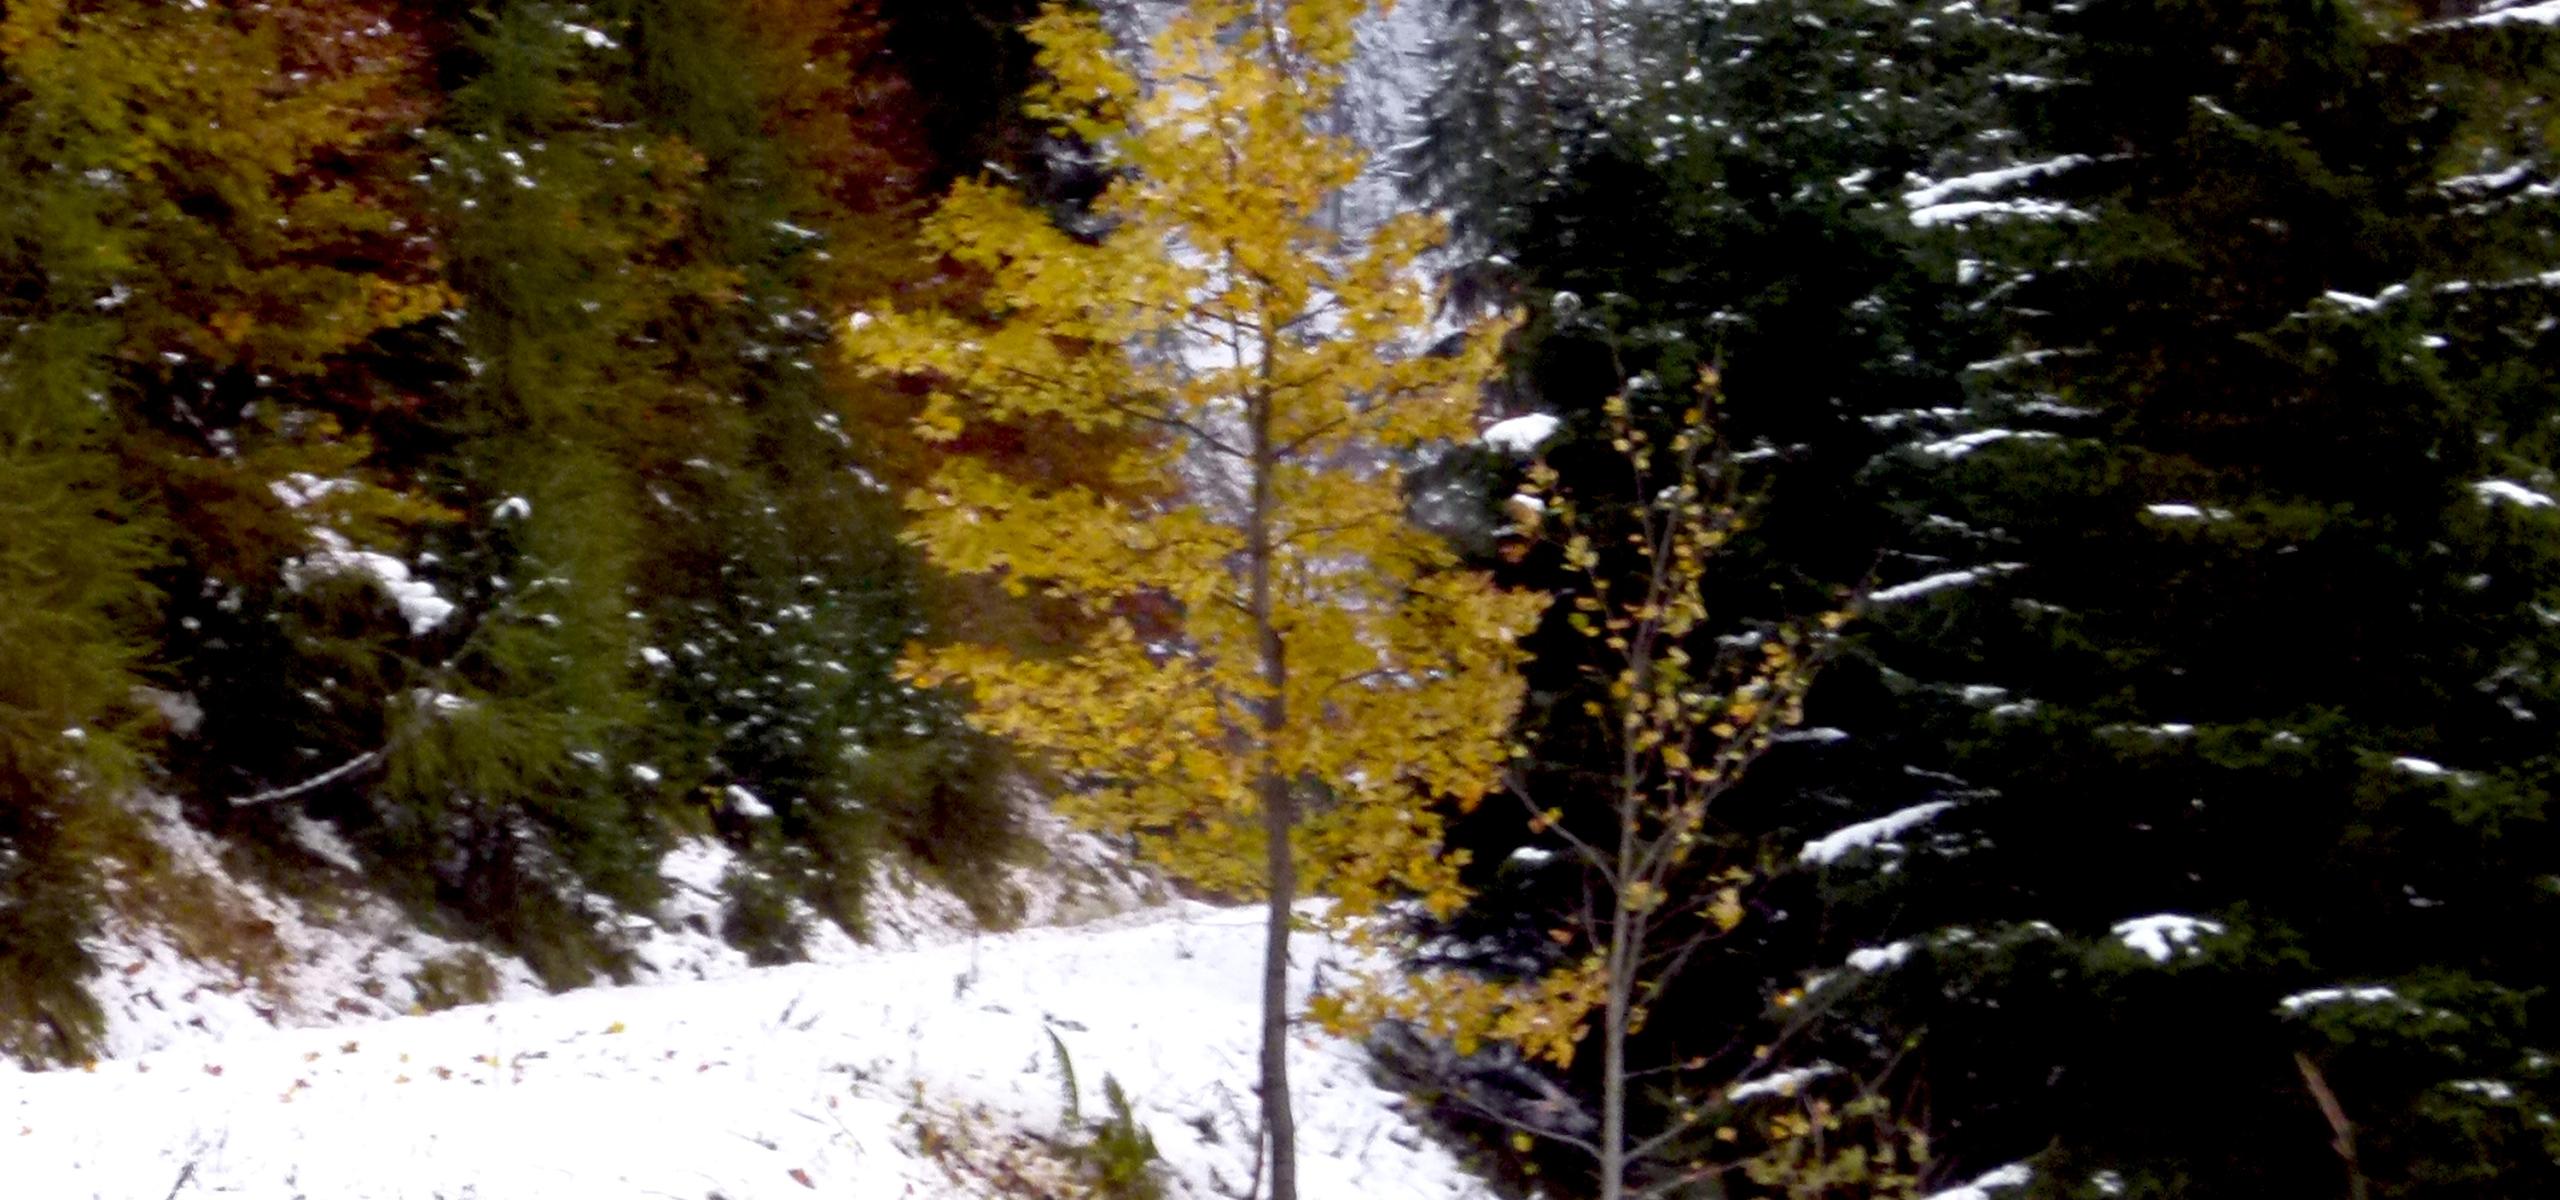 Podzimní žlutě zbarvený horský javor září v zasněženém horském lese